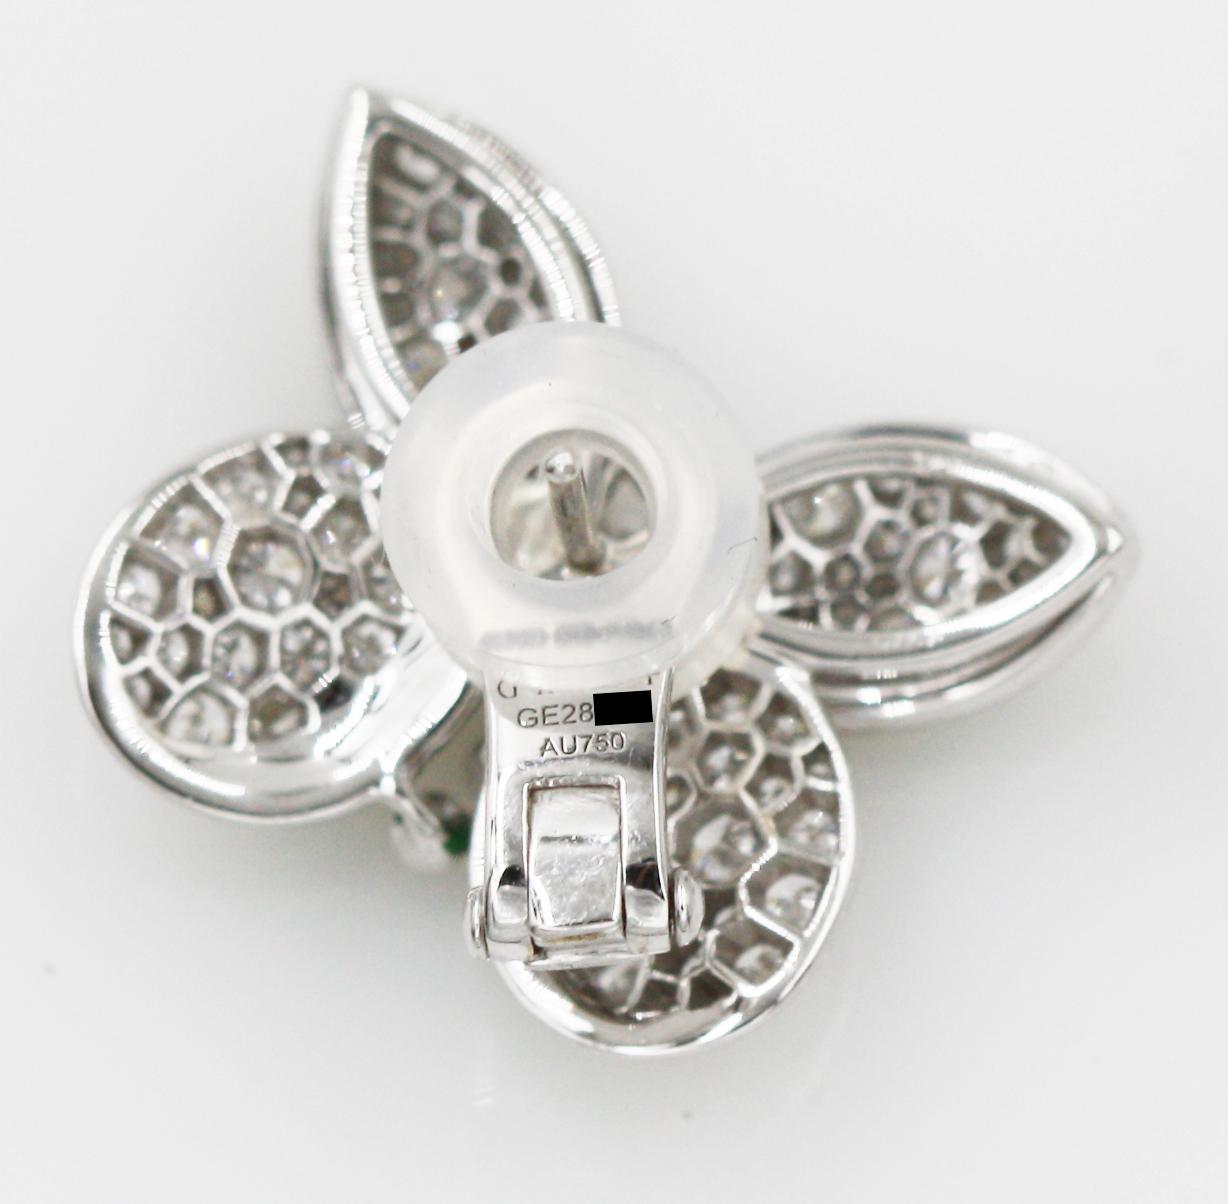 graff diamond butterfly earrings